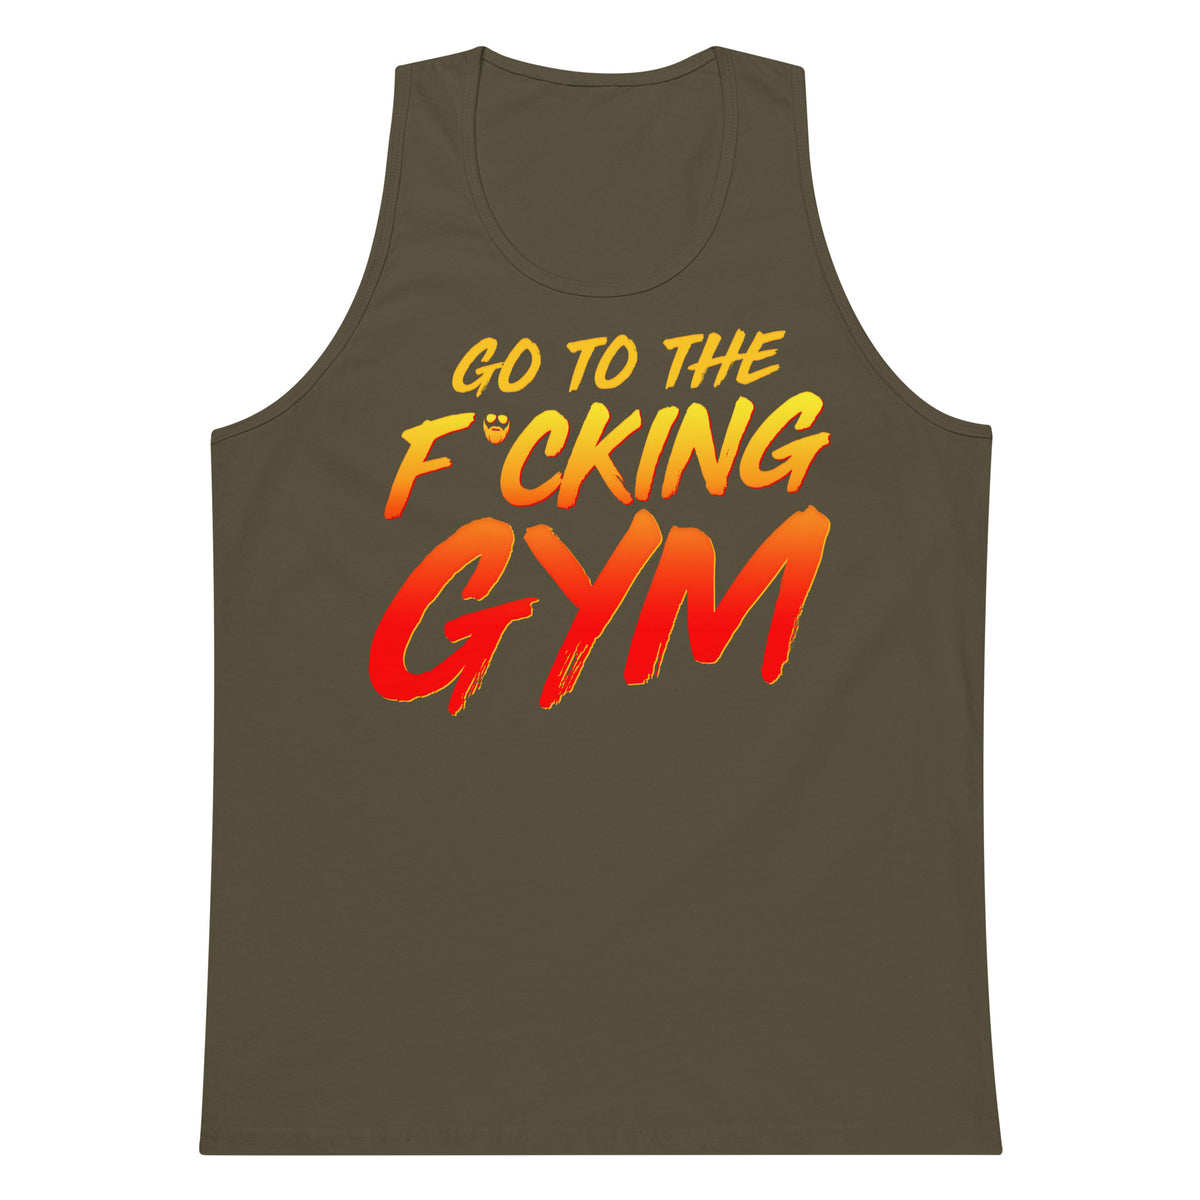 Go To The F*cking Tank – Papa Swolio Premium Gym Top